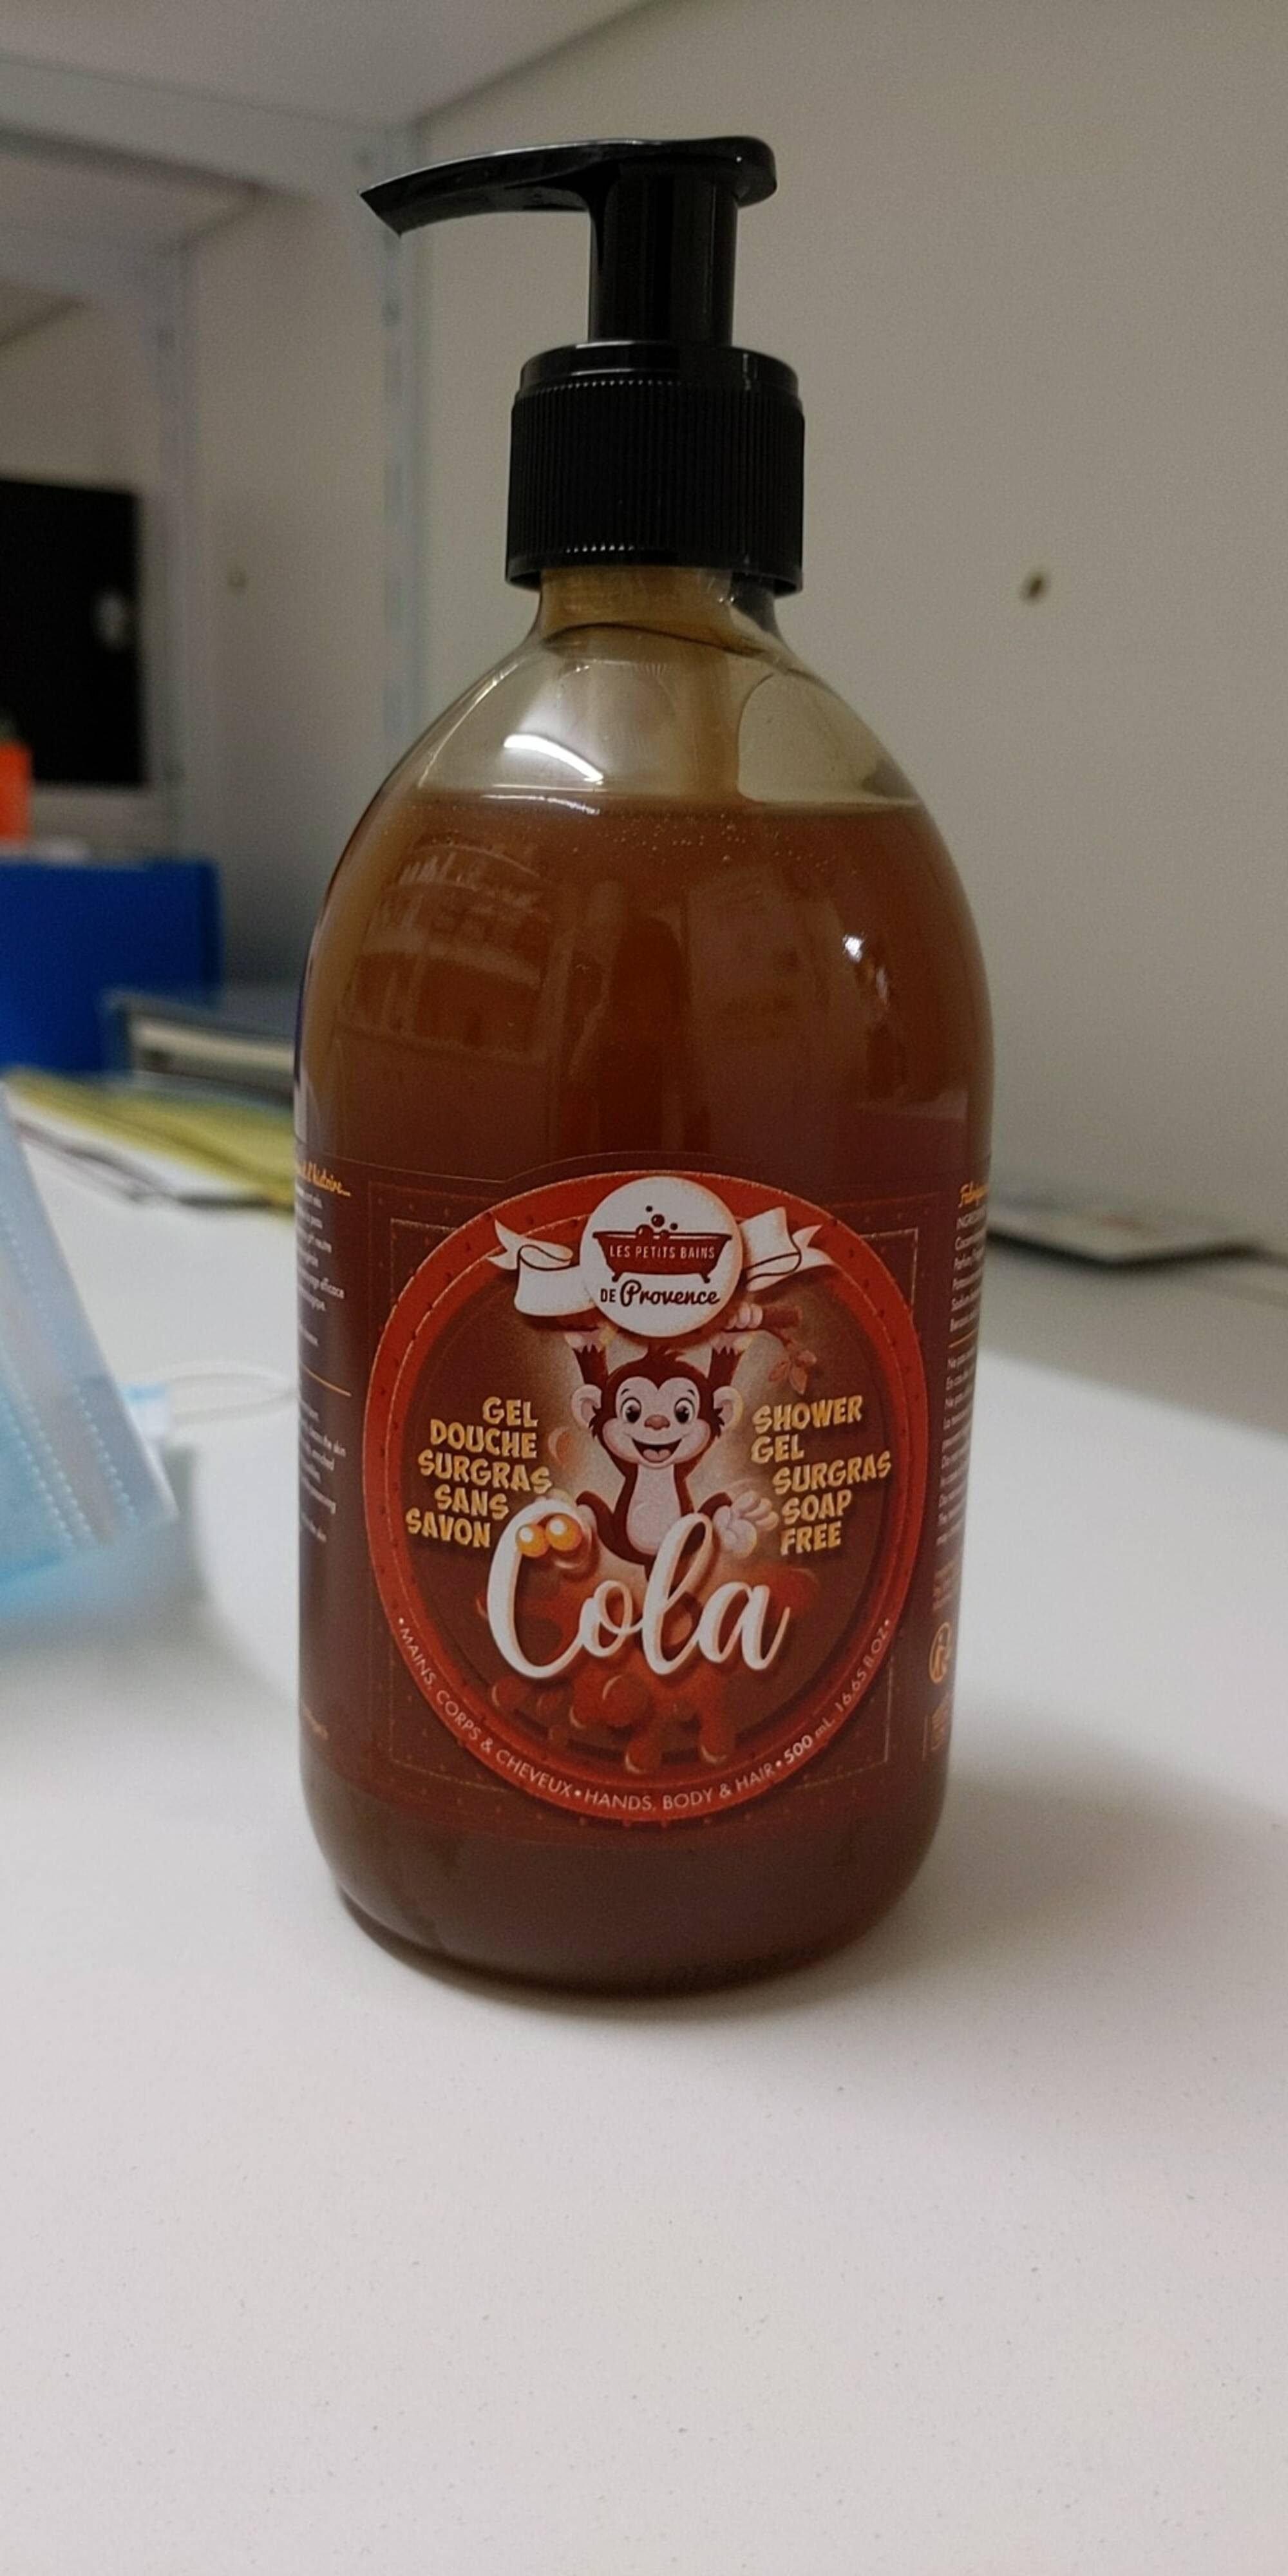 LES PETITS BAINS DE PROVENCE - Cola - Gel douche surgras sans savon